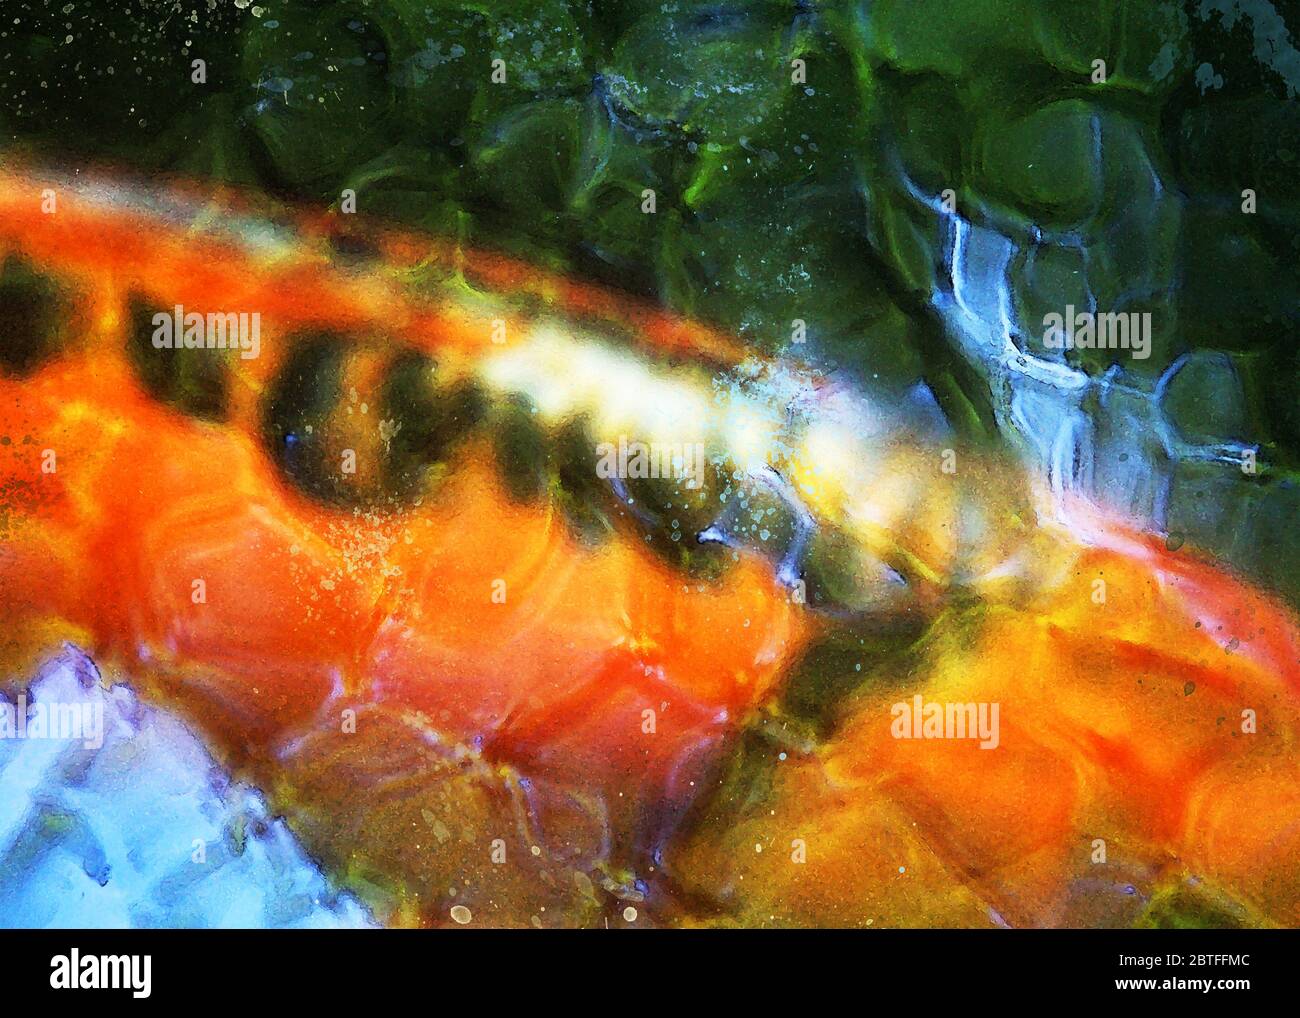 Une image abstraite d'un poisson koi. Banque D'Images